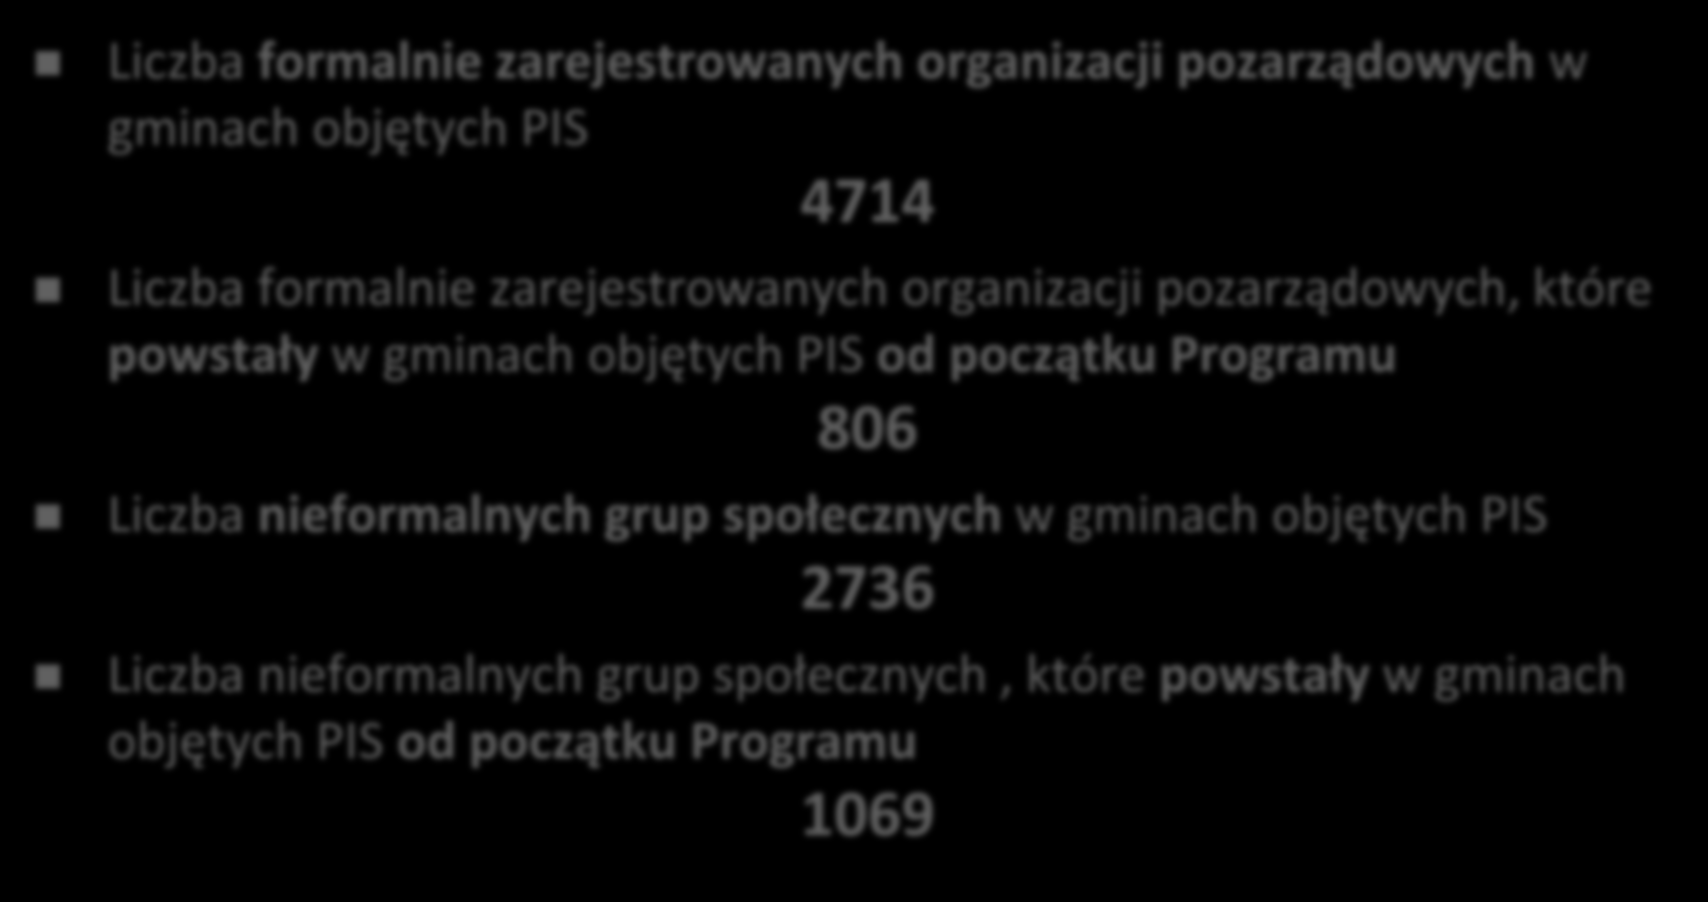 Liczba organizacji i grup społecznych Liczba formalnie zarejestrowanych organizacji pozarządowych w gminach objętych PIS 4714 Liczba formalnie zarejestrowanych organizacji pozarządowych, które